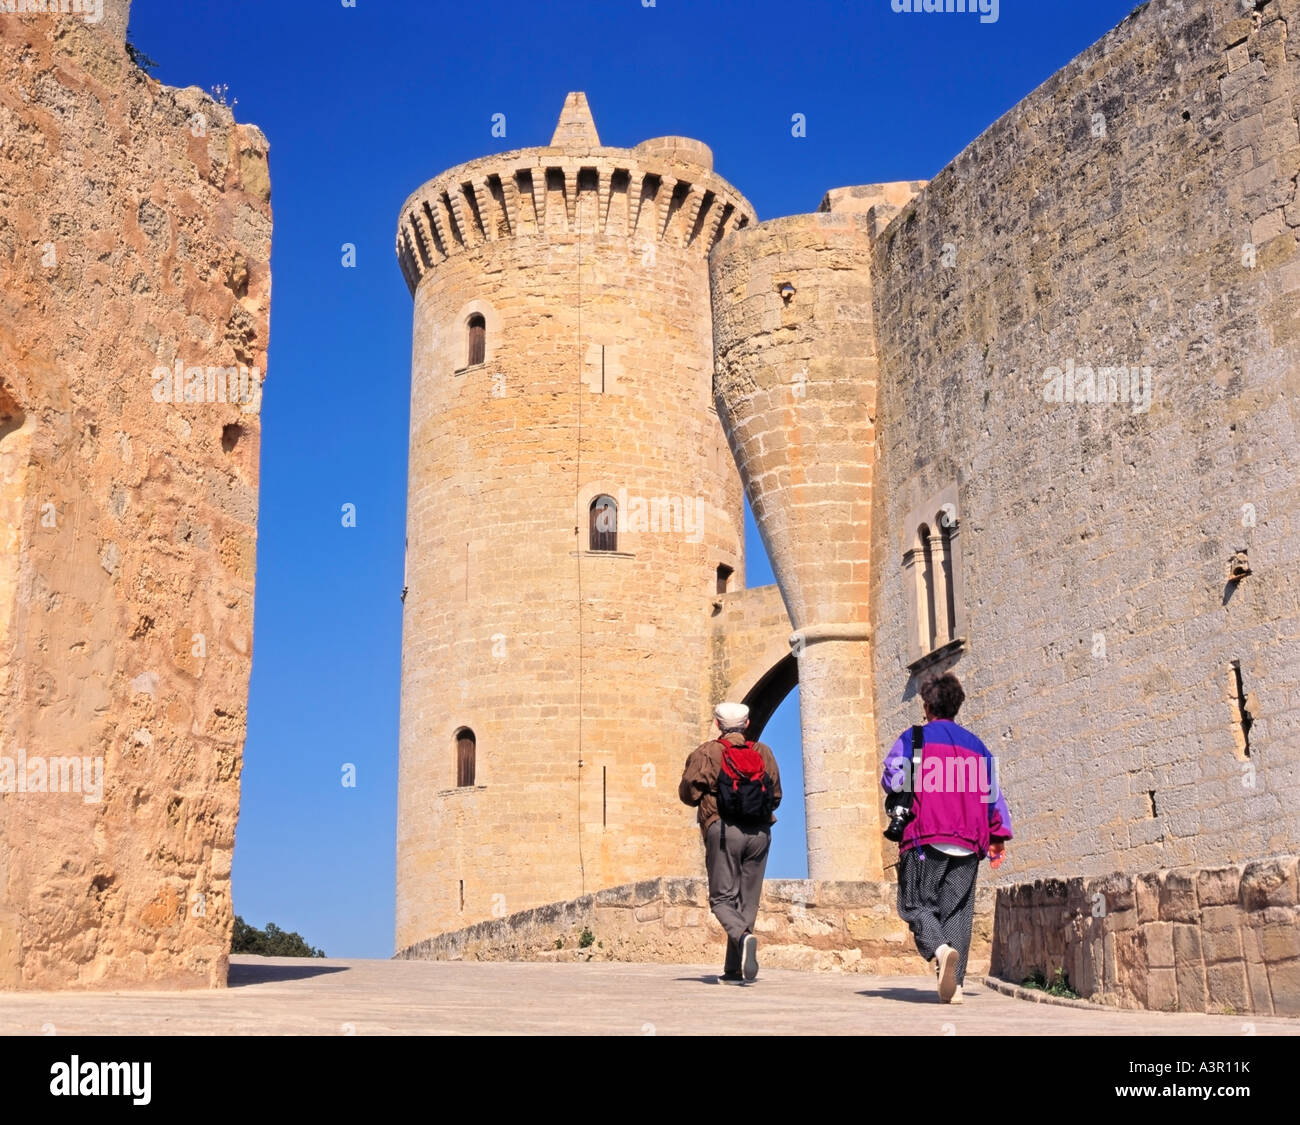 Castell de Bellver, Bellver Castle, Bosc de Bellver Hill, Palma, Mallorca, Balearic Islands, Spain Stock Photo